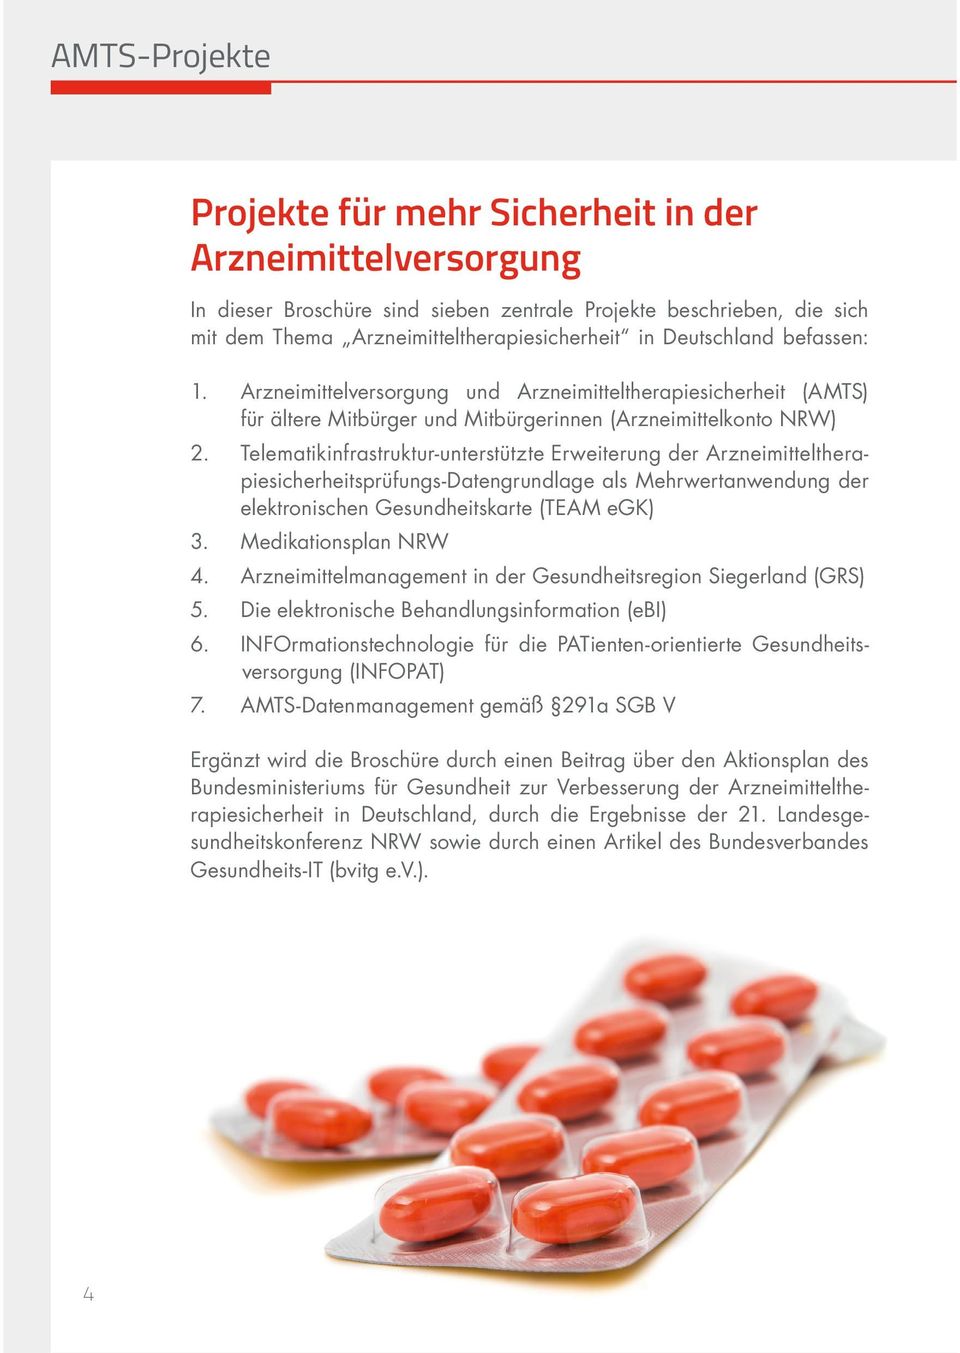 Telematikinfrastruktur-unterstützte Erweiterung der Arzneimittelthera- piesicherheitsprüfungs-datengrundlage als Mehrwertanwendung der elektronischen Gesundheitskarte (TEAM egk) 3.